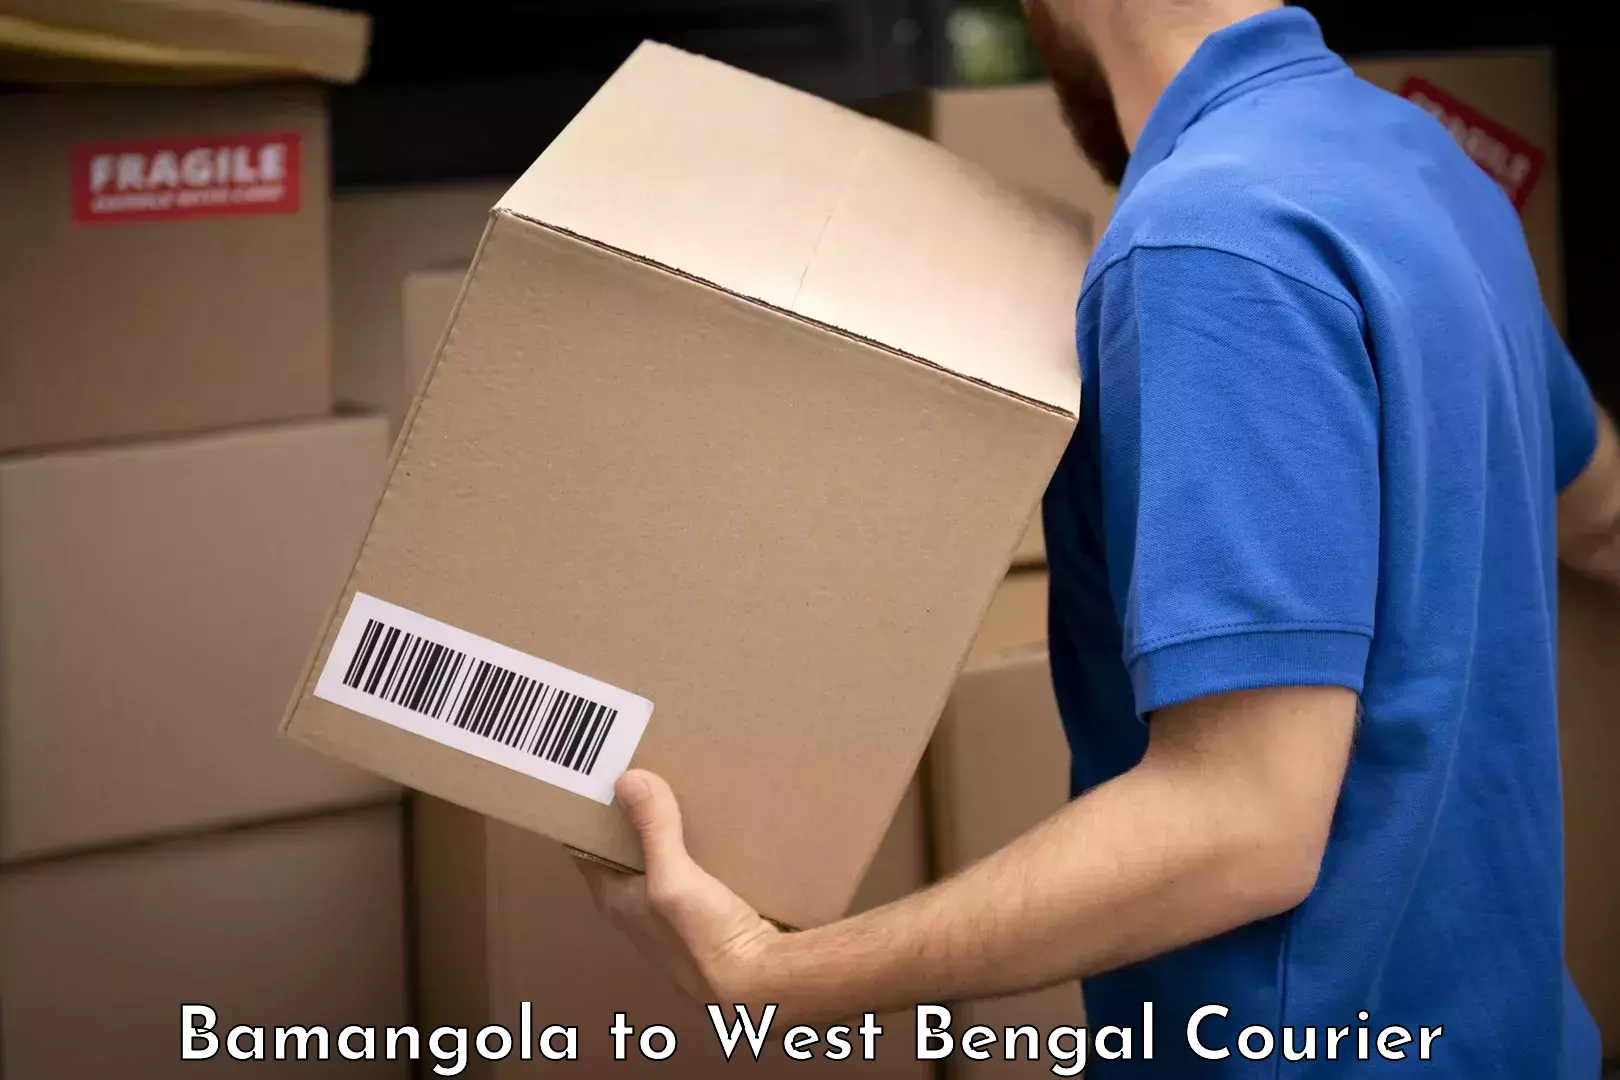 Baggage shipping experts Bamangola to North 24 Parganas